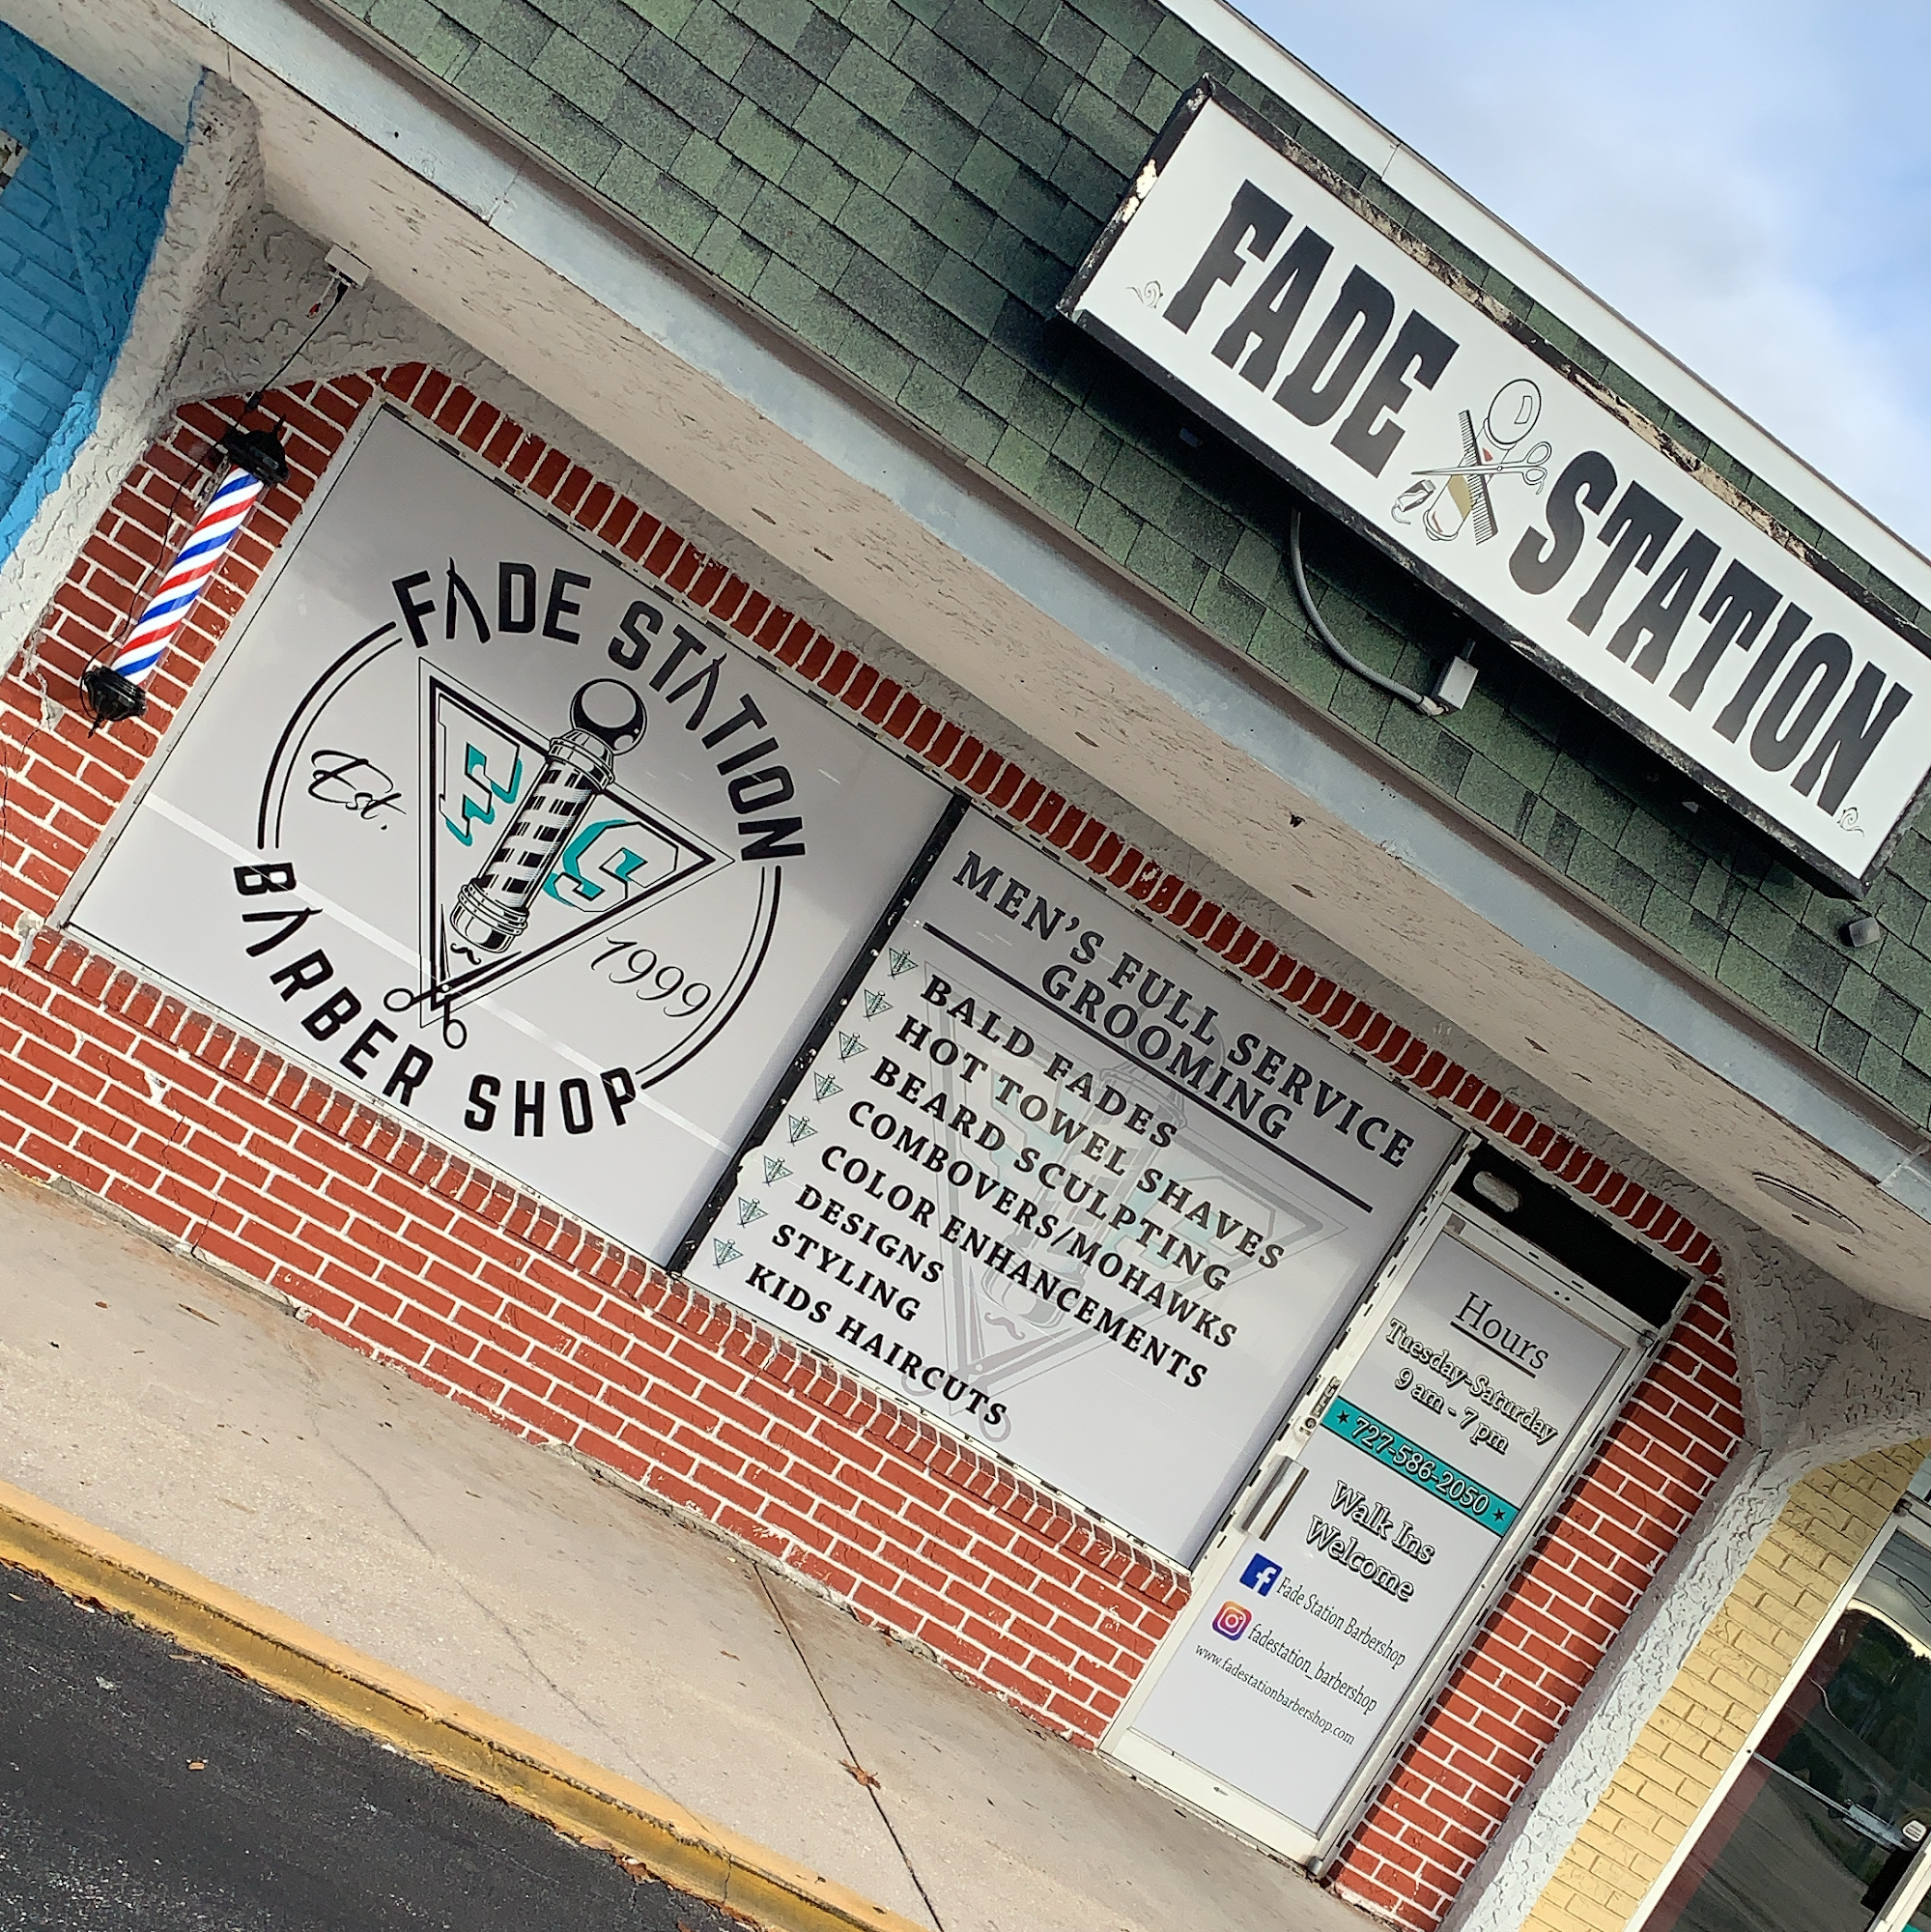 Fade Station Barber Shop